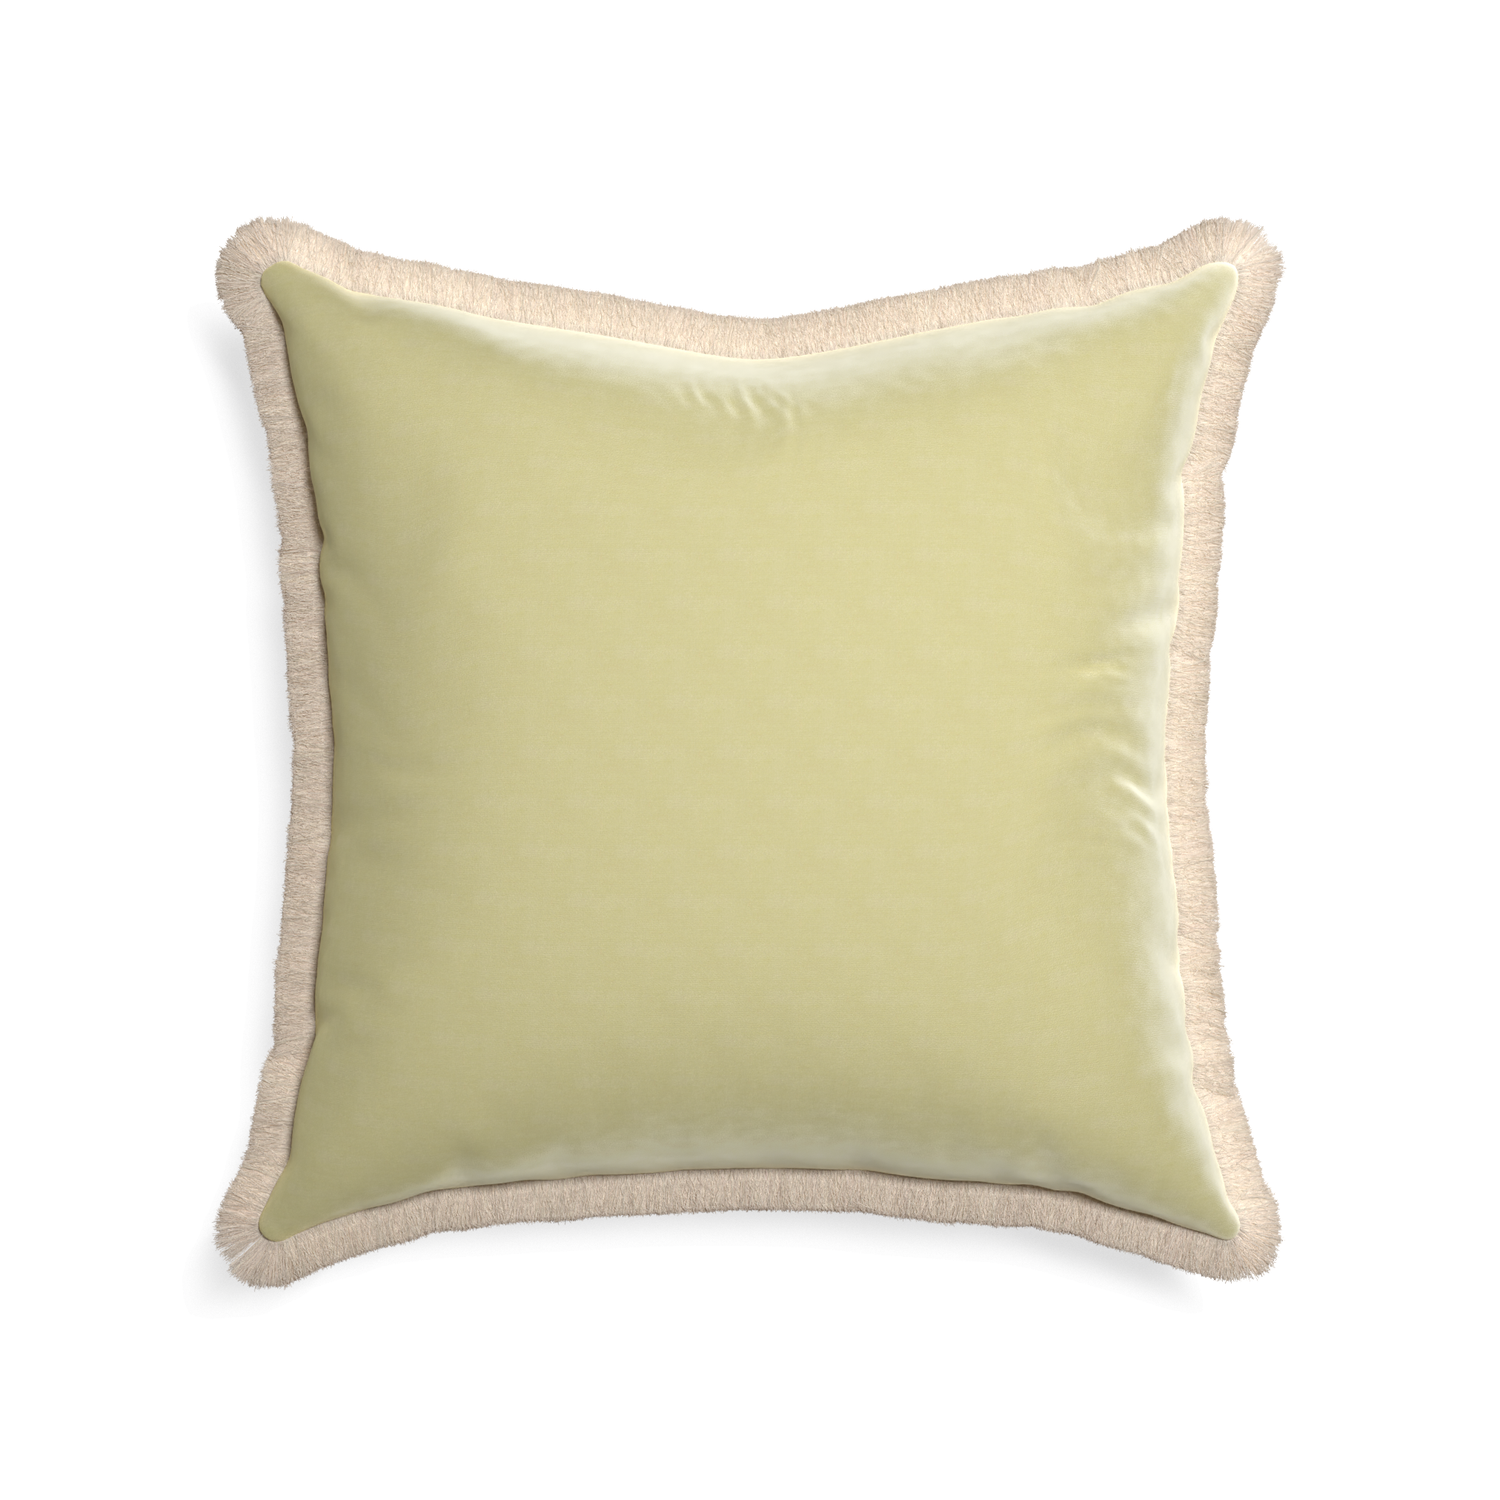 22-square pear velvet custom pillow with cream fringe on white background